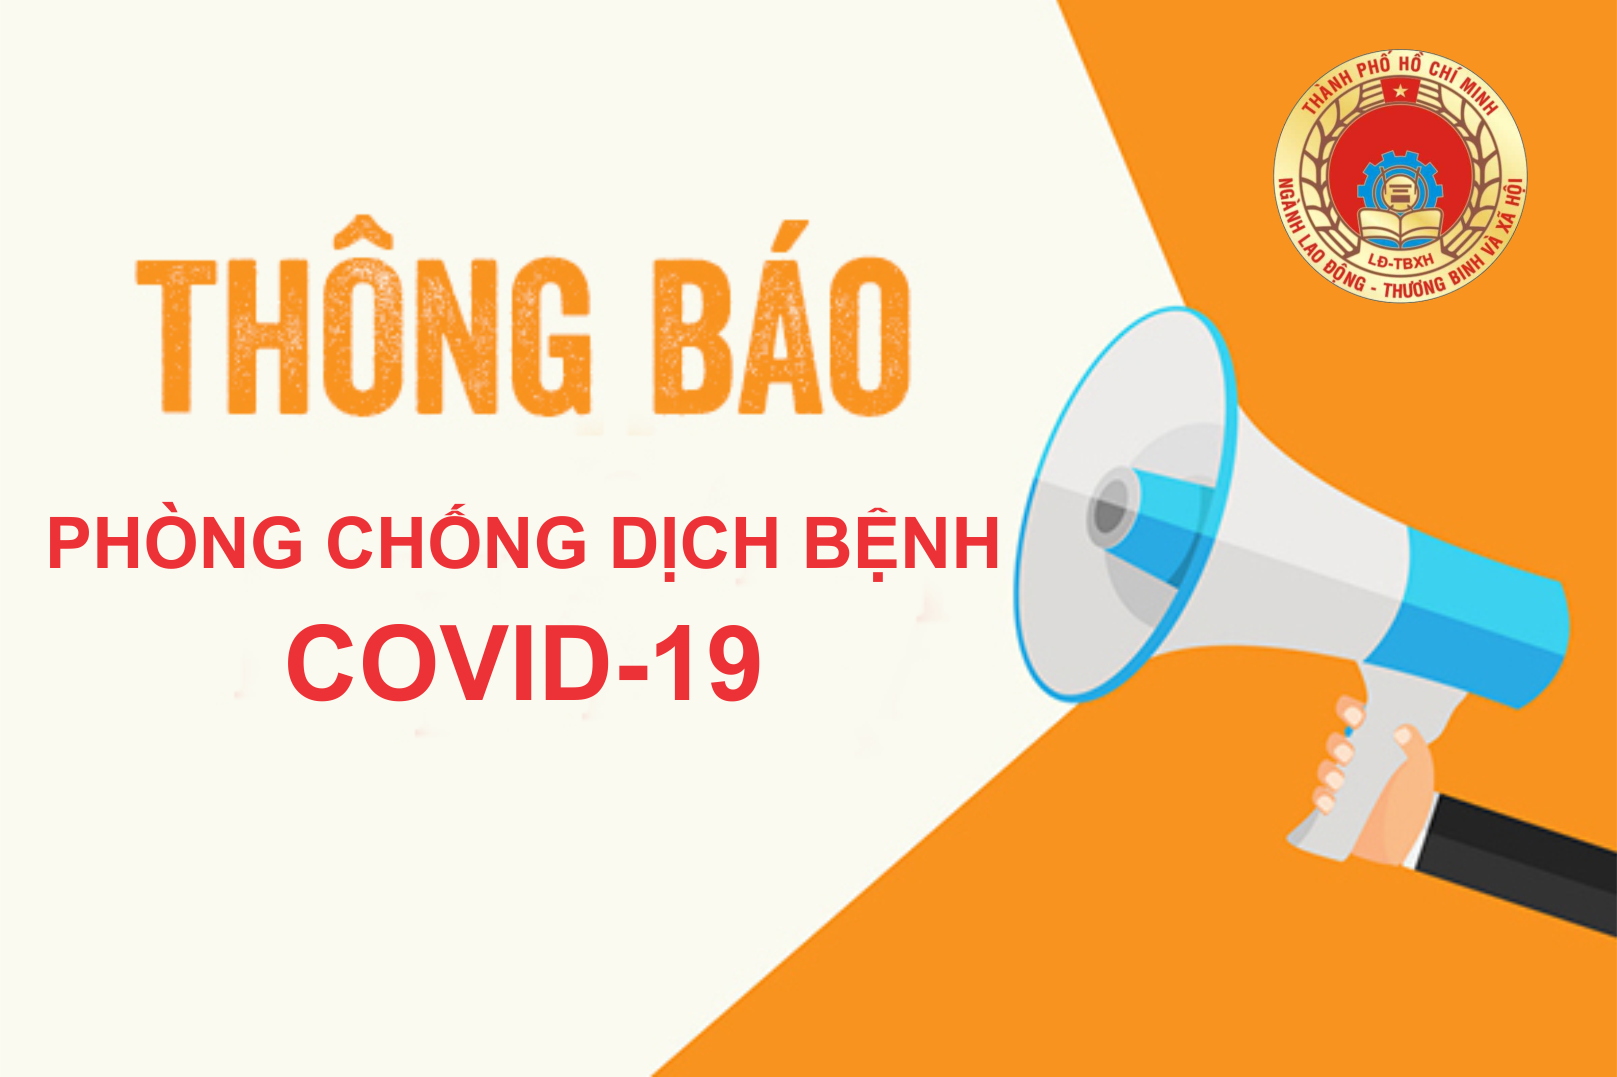 CV 5576: Tiếp tục tăng cường phòng, chống dịch bệnh COVID-19 tại cơ sở giáo dục nghề nghiệp trên địa bàn Thành phố Hồ Chí Minh